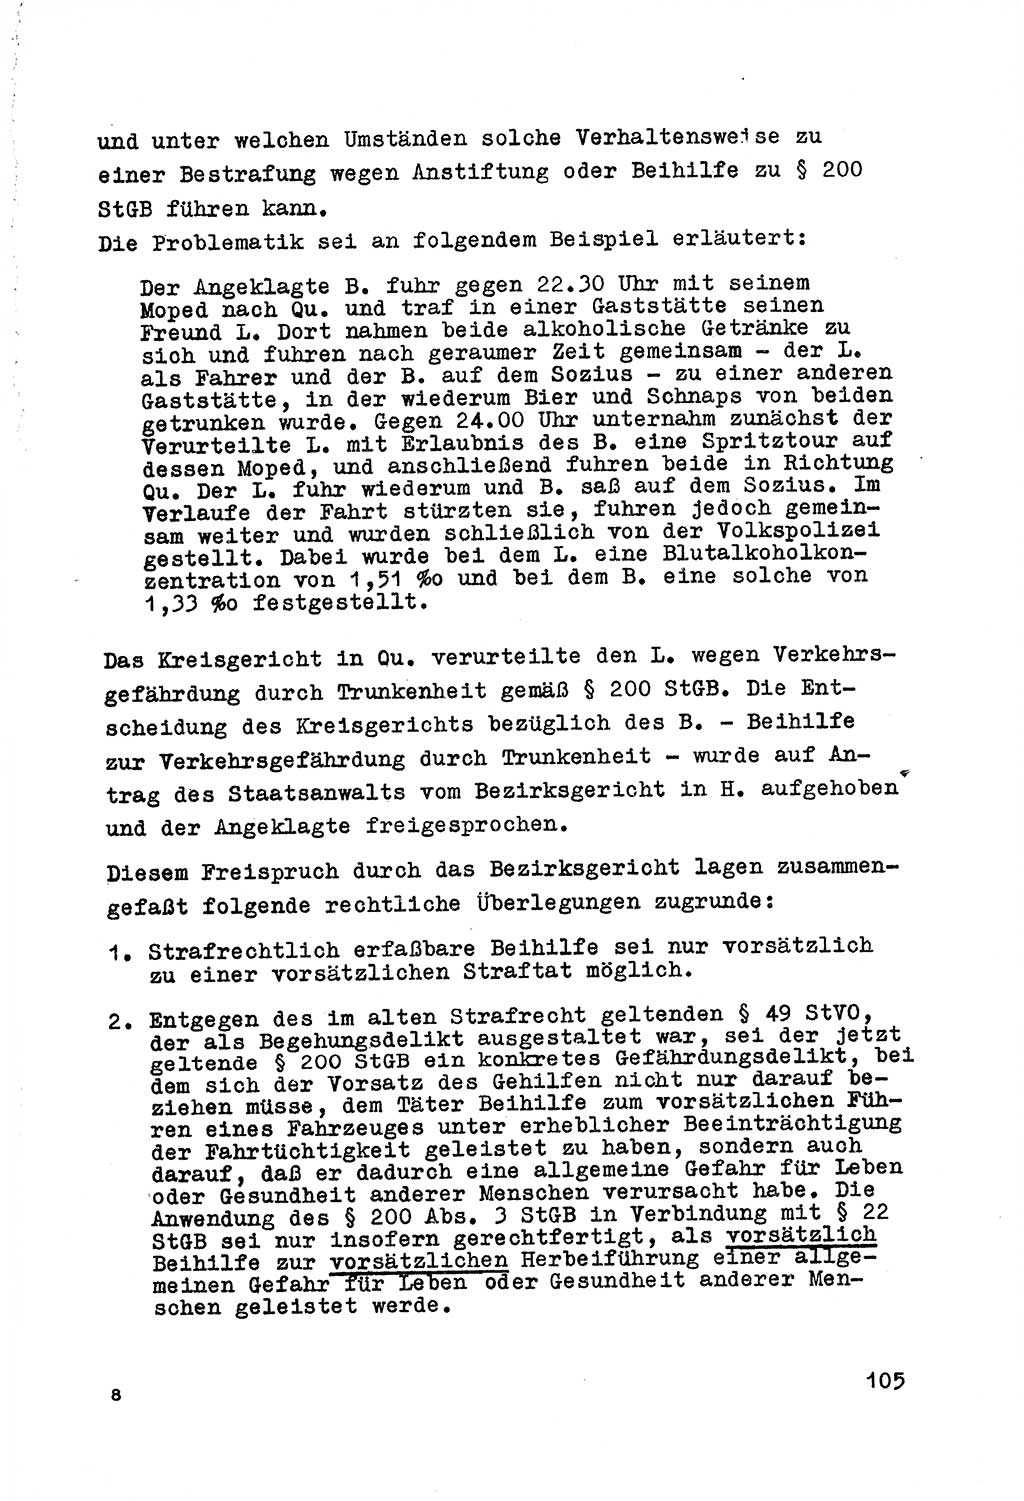 Strafrecht der DDR (Deutsche Demokratische Republik), Besonderer Teil, Lehrmaterial, Heft 7 1970, Seite 105 (Strafr. DDR BT Lehrmat. H. 7 1970, S. 105)